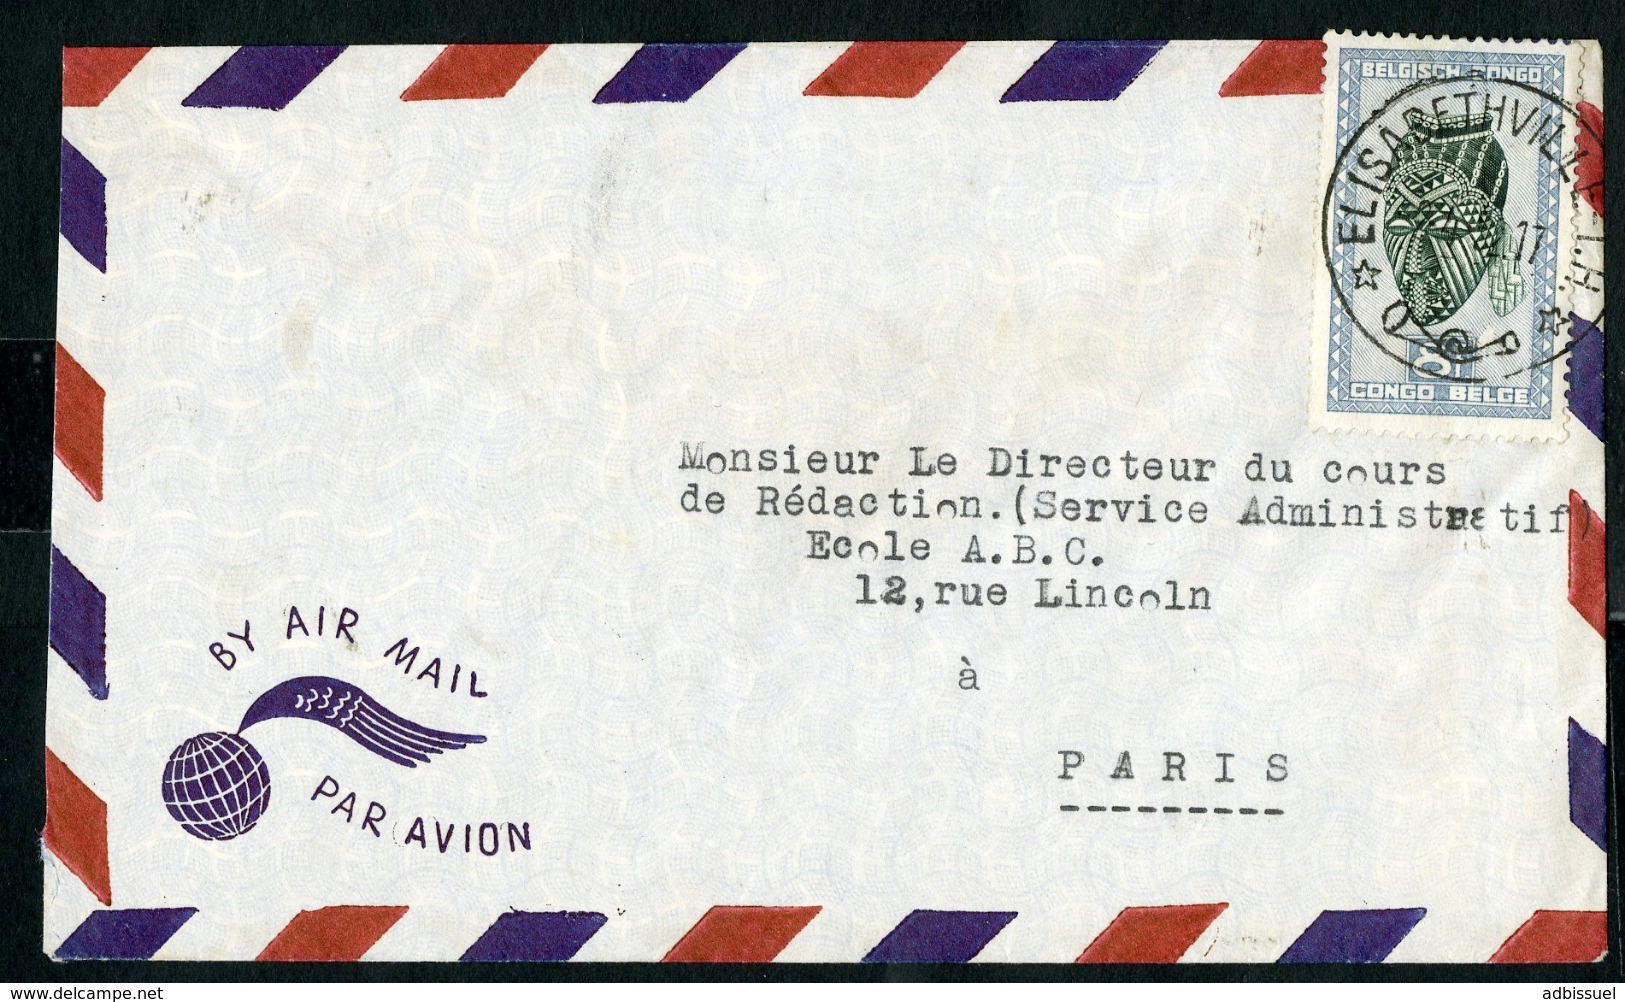 CONGO BELGE "ELISABETHVILLE I.H. 2/4/52" Sur N° 291B. Sur Enveloppe Par Avion Pour La France. - Briefe U. Dokumente